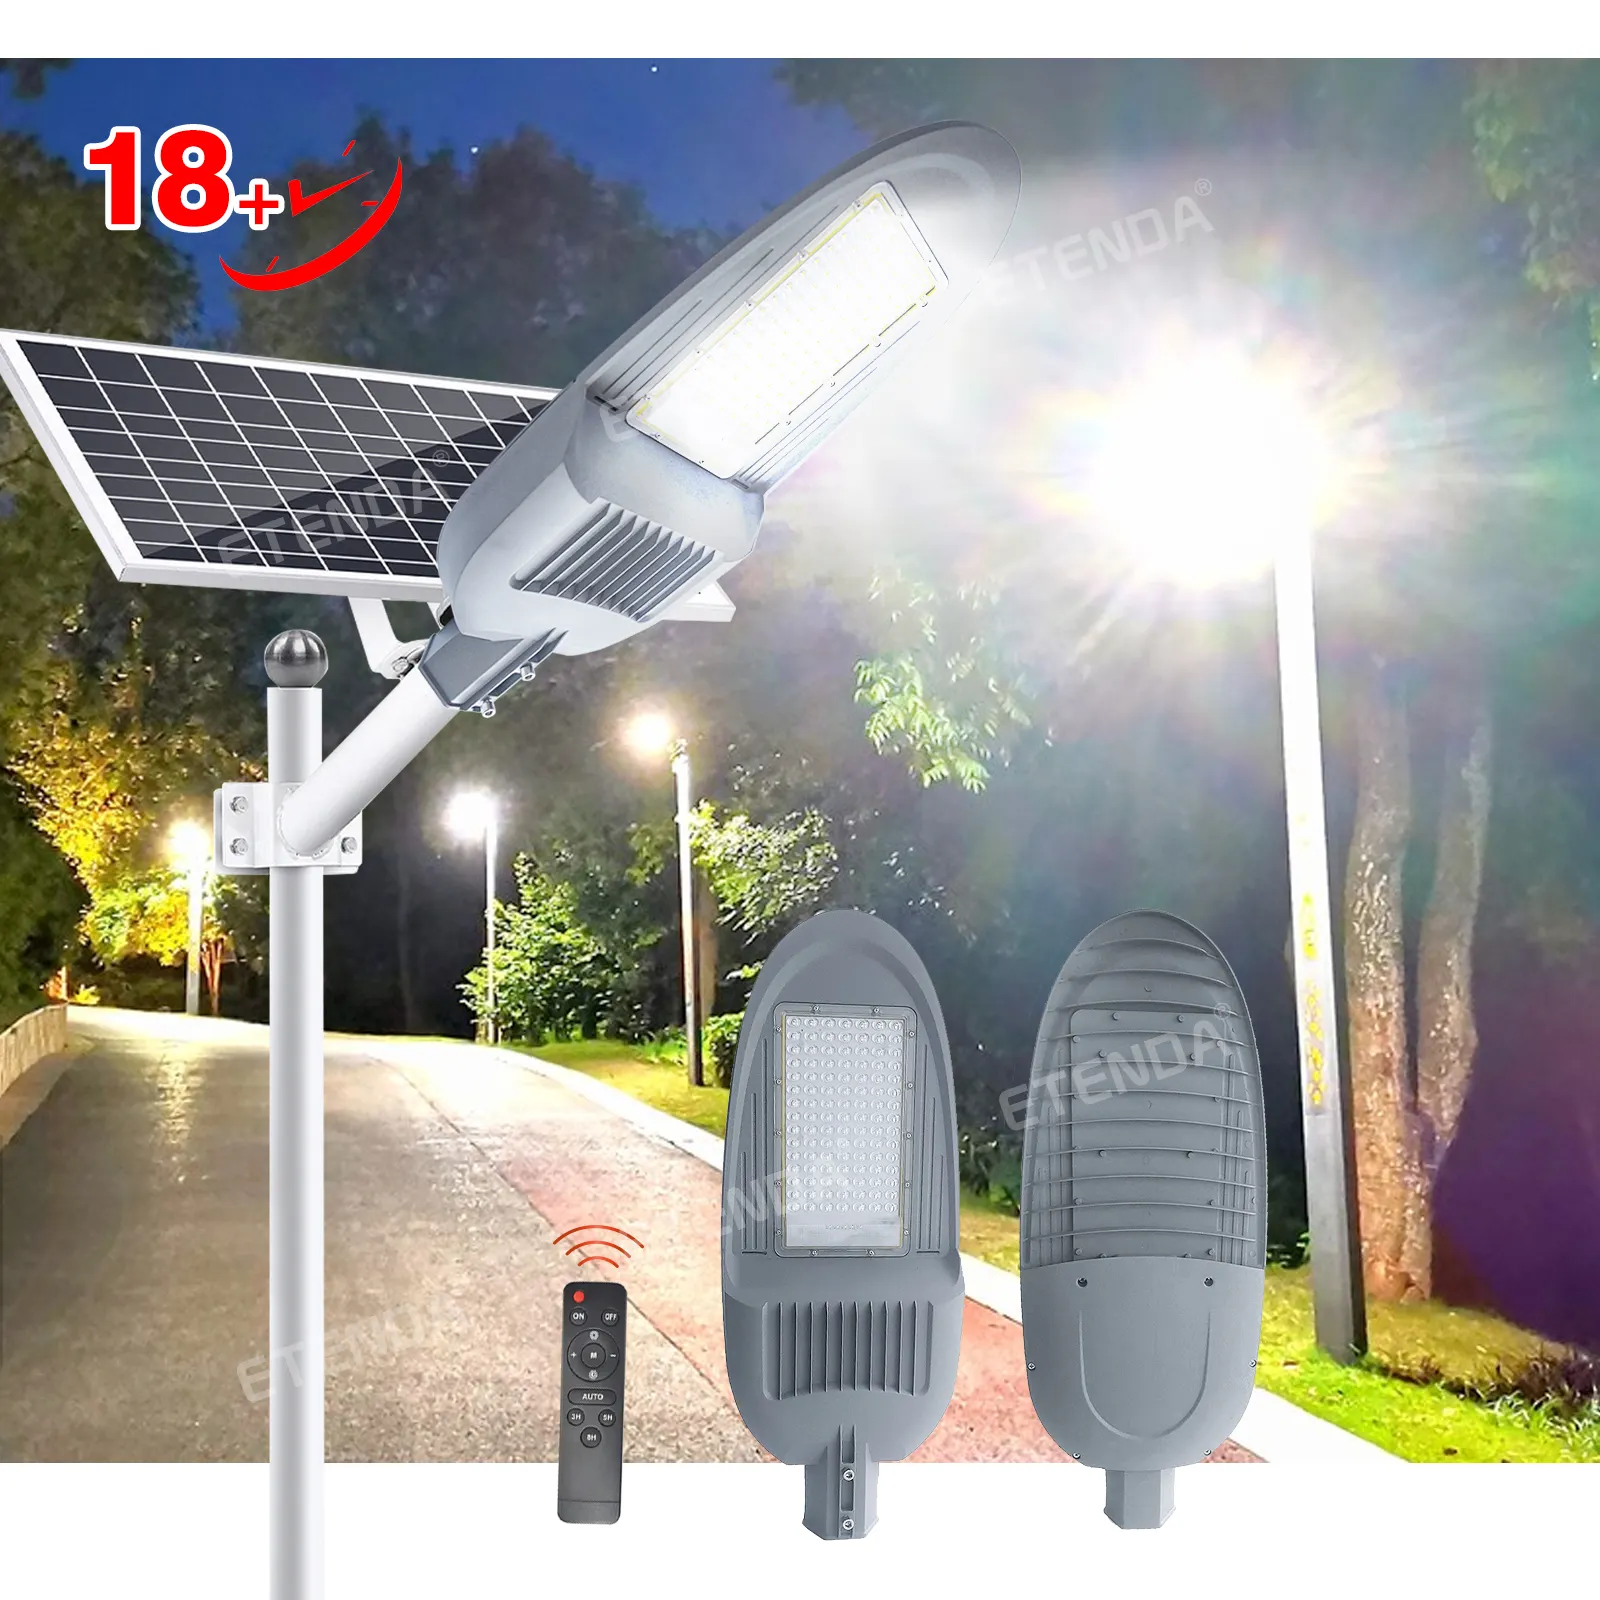 ETENDA Project 8 meters New Solar Street Lighting 500w Outdoor Ip65 Waterproof AUTO Solar Light Street